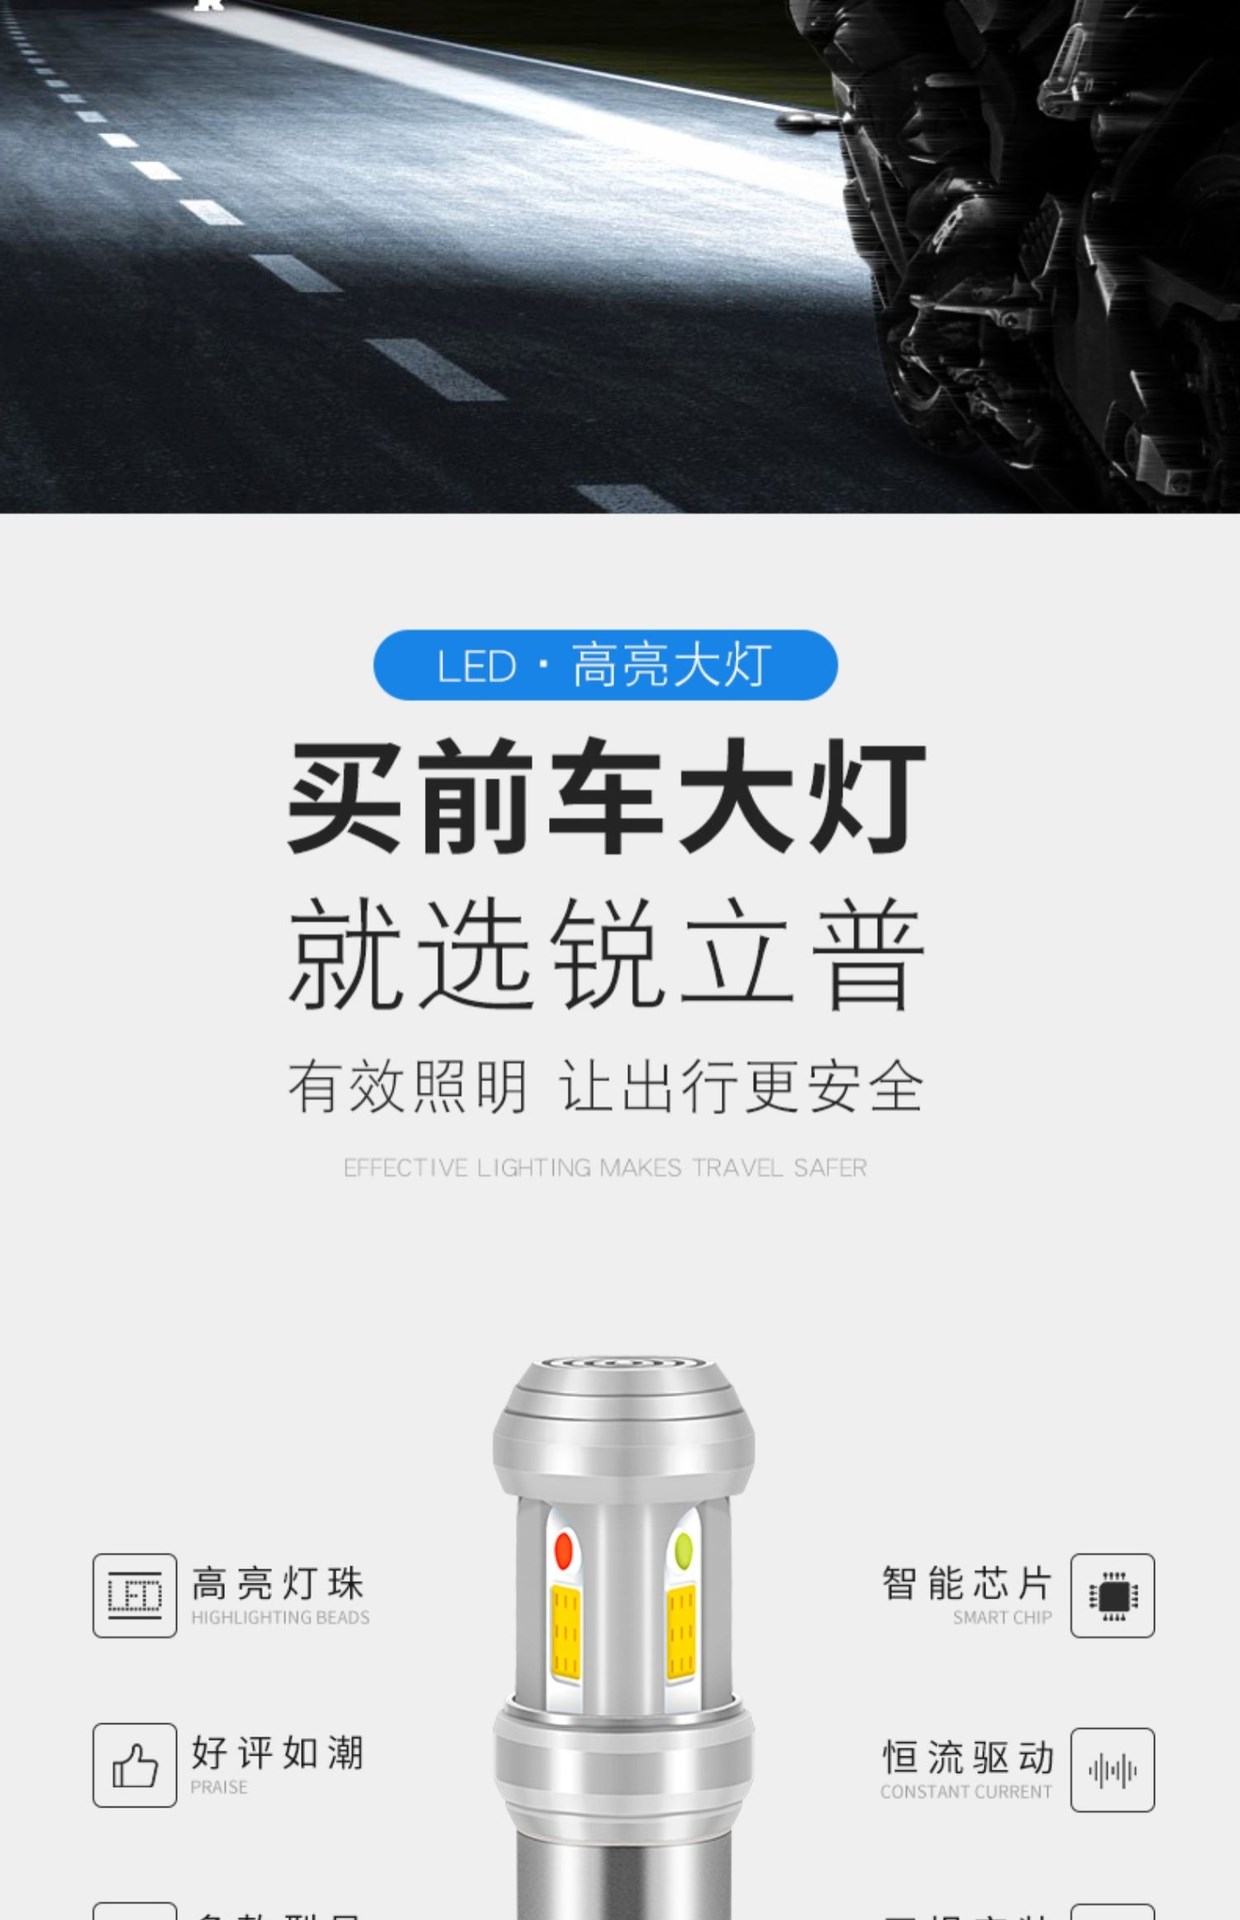 Thích hợp cho bóng đèn xe máy Qianjiang Yulong QJ150-26J LED trang bị thêm đèn pha led nhấp nháy siêu sáng chói - Đèn xe máy